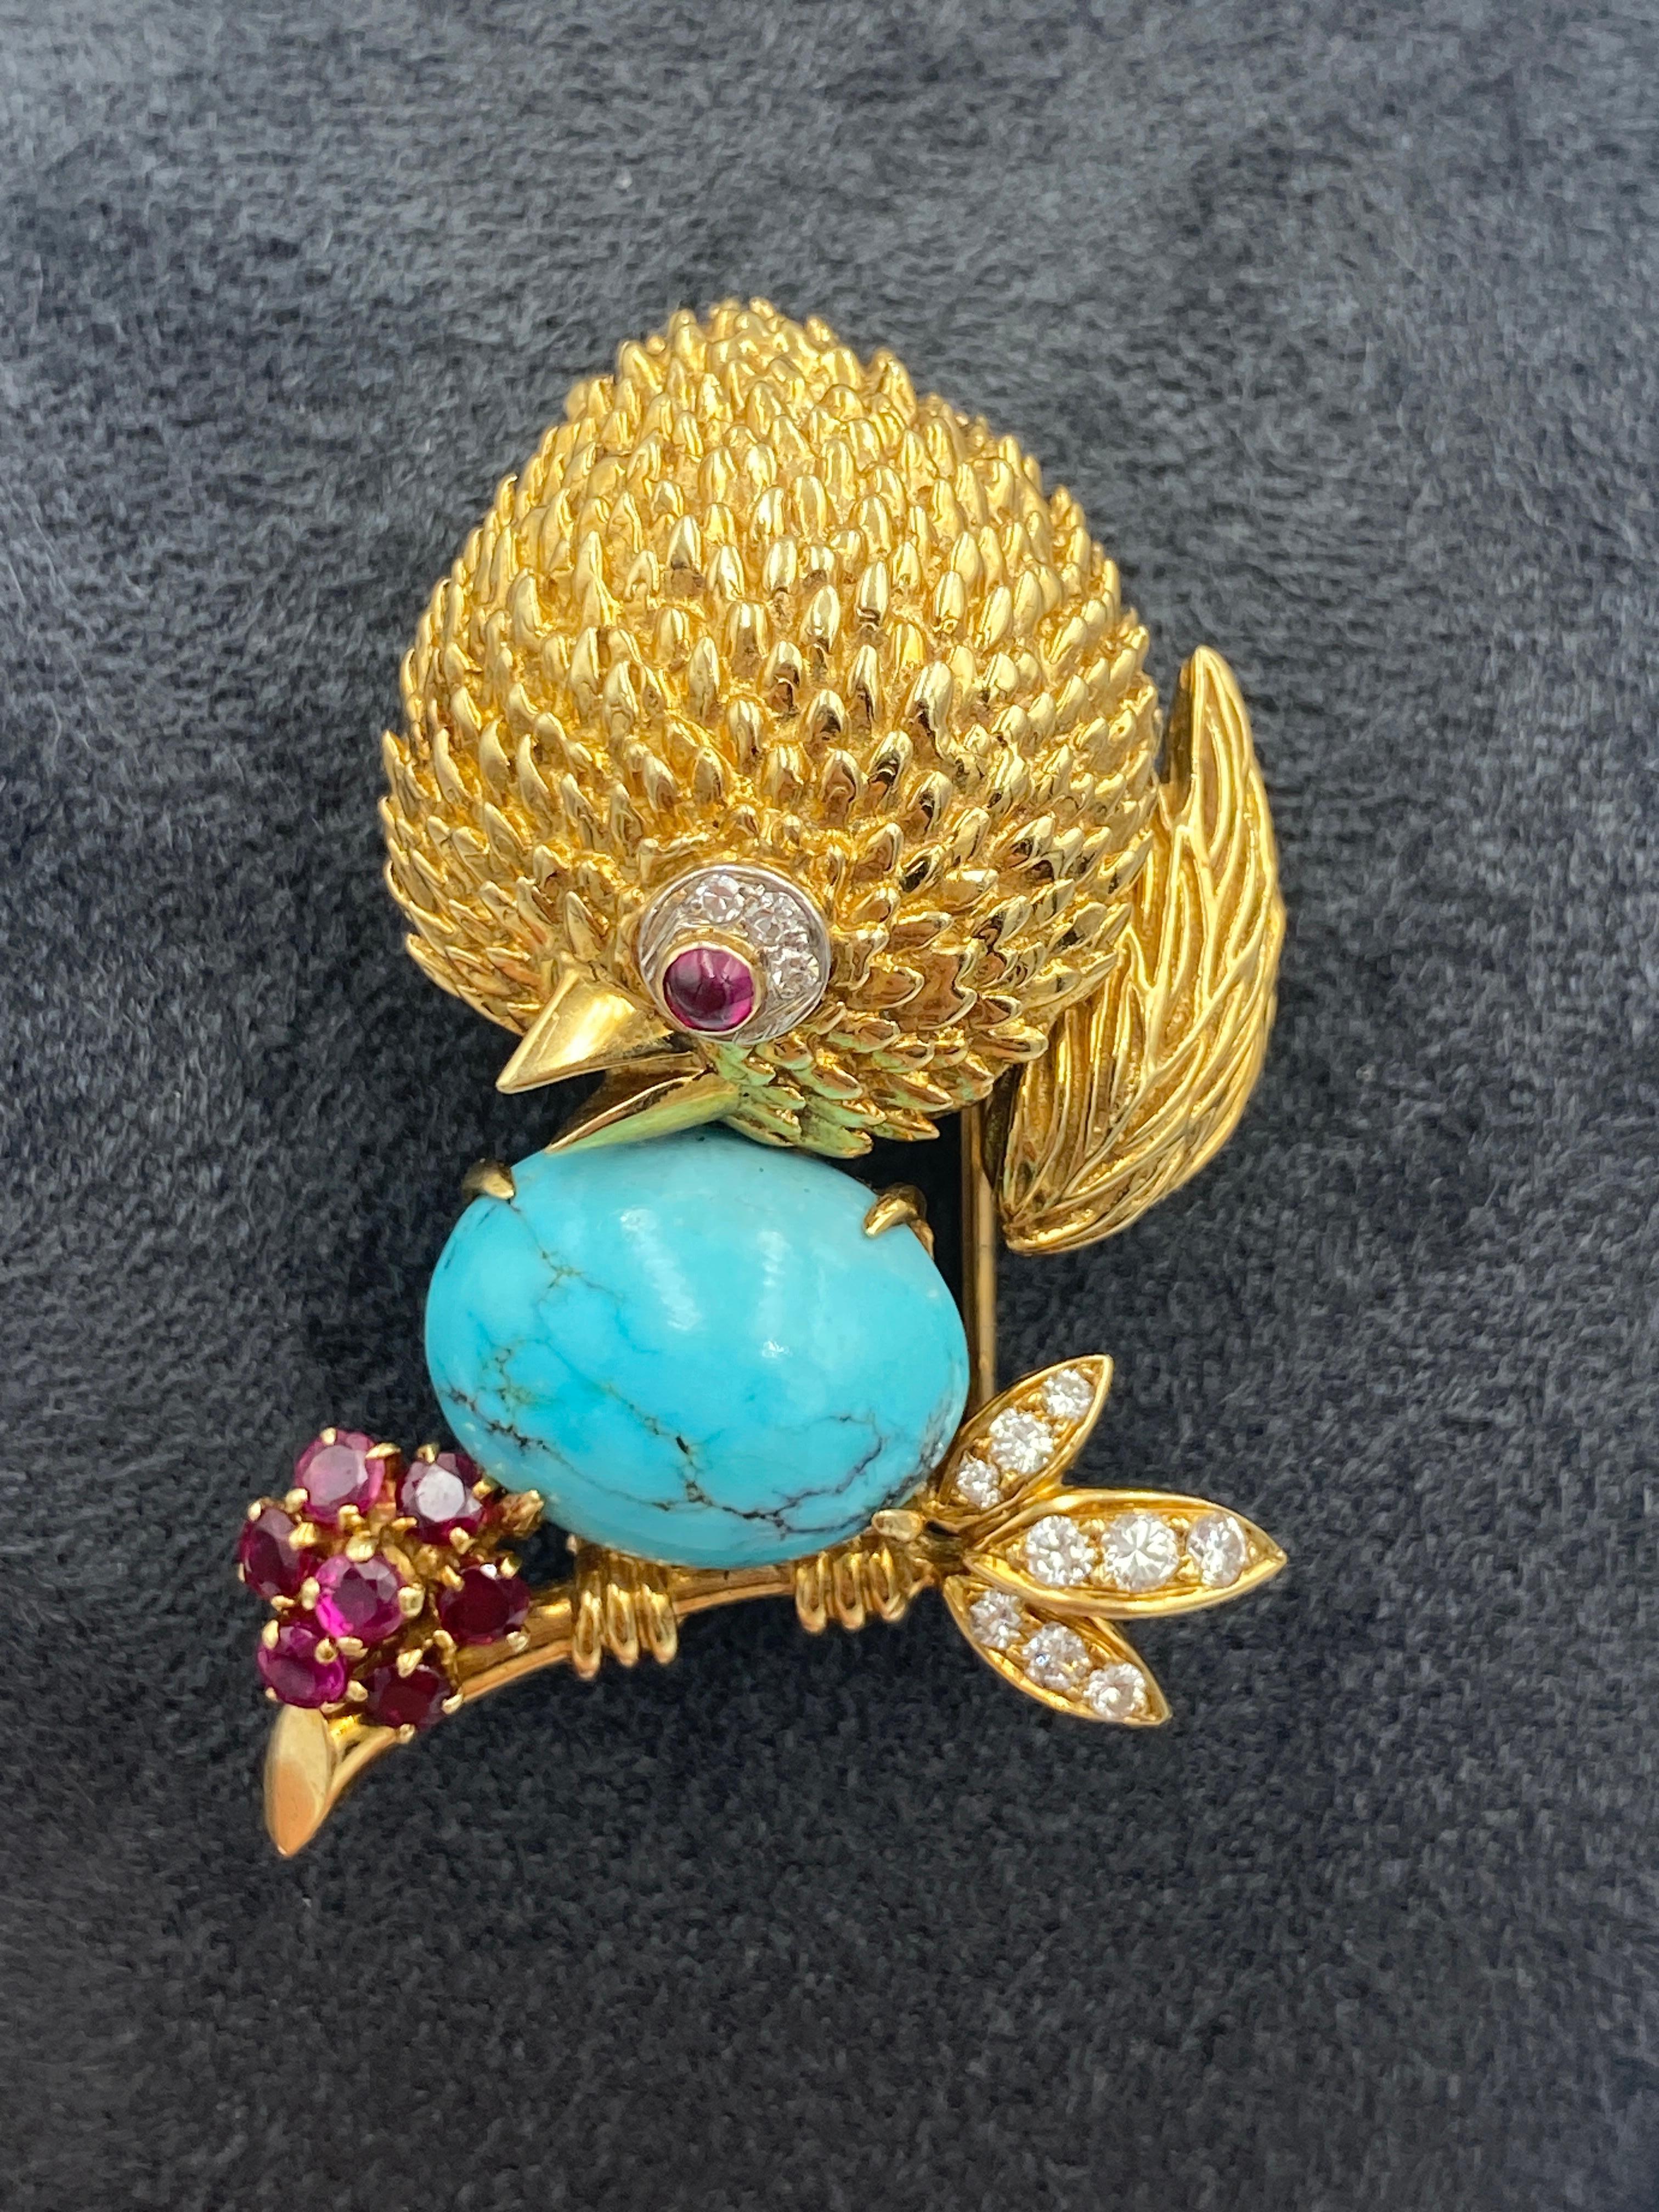 Cette ravissante broche en or 18 carats, réalisée dans les années 1960, est ornée de petits diamants et rubis de taille ronde et d'une grande turquoise cabochon en guise d'œuf. Il s'agit d'un excellent complément à toute collection.